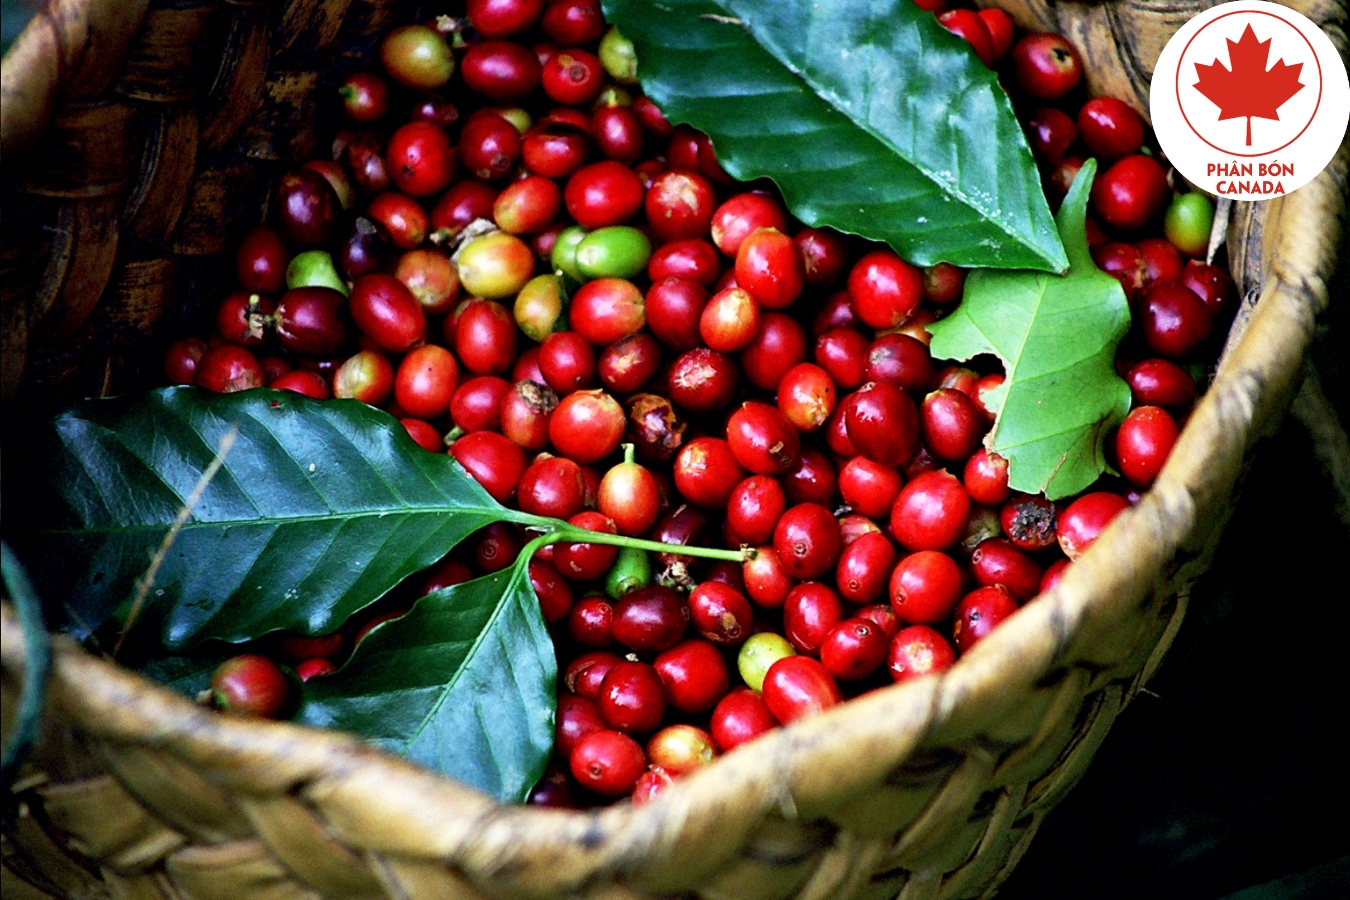 chăm sóc cây cà phê chè Arabica